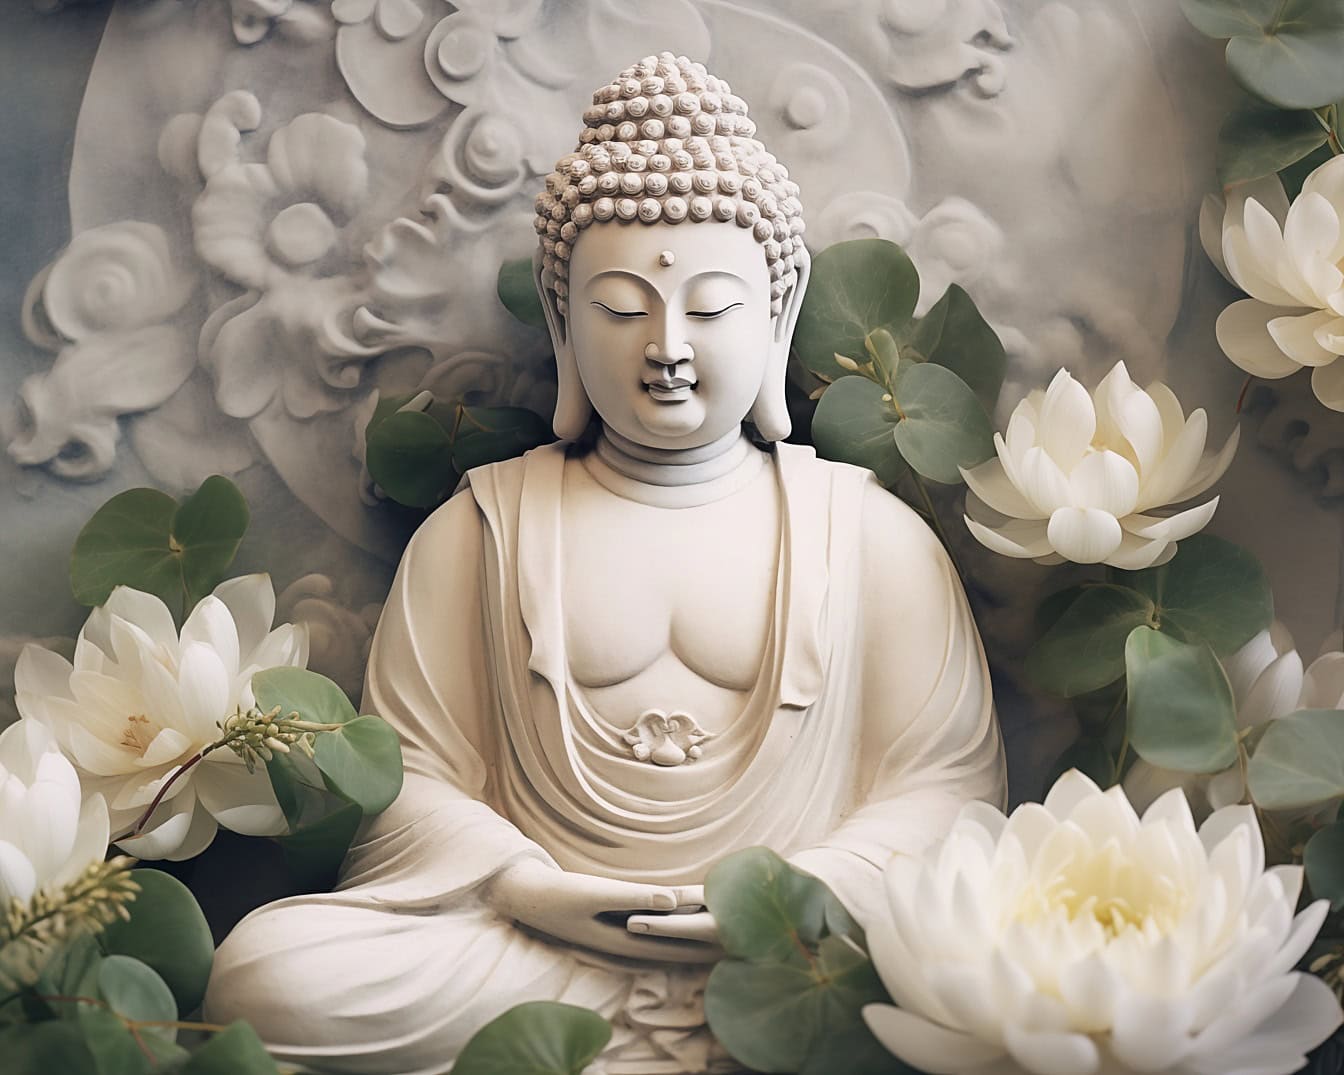 Zen’i manevi bir felsefe olarak tasvir eden nilüfer çiçekleriyle çevrili transandantal Meditasyon’daki Buda heykeli